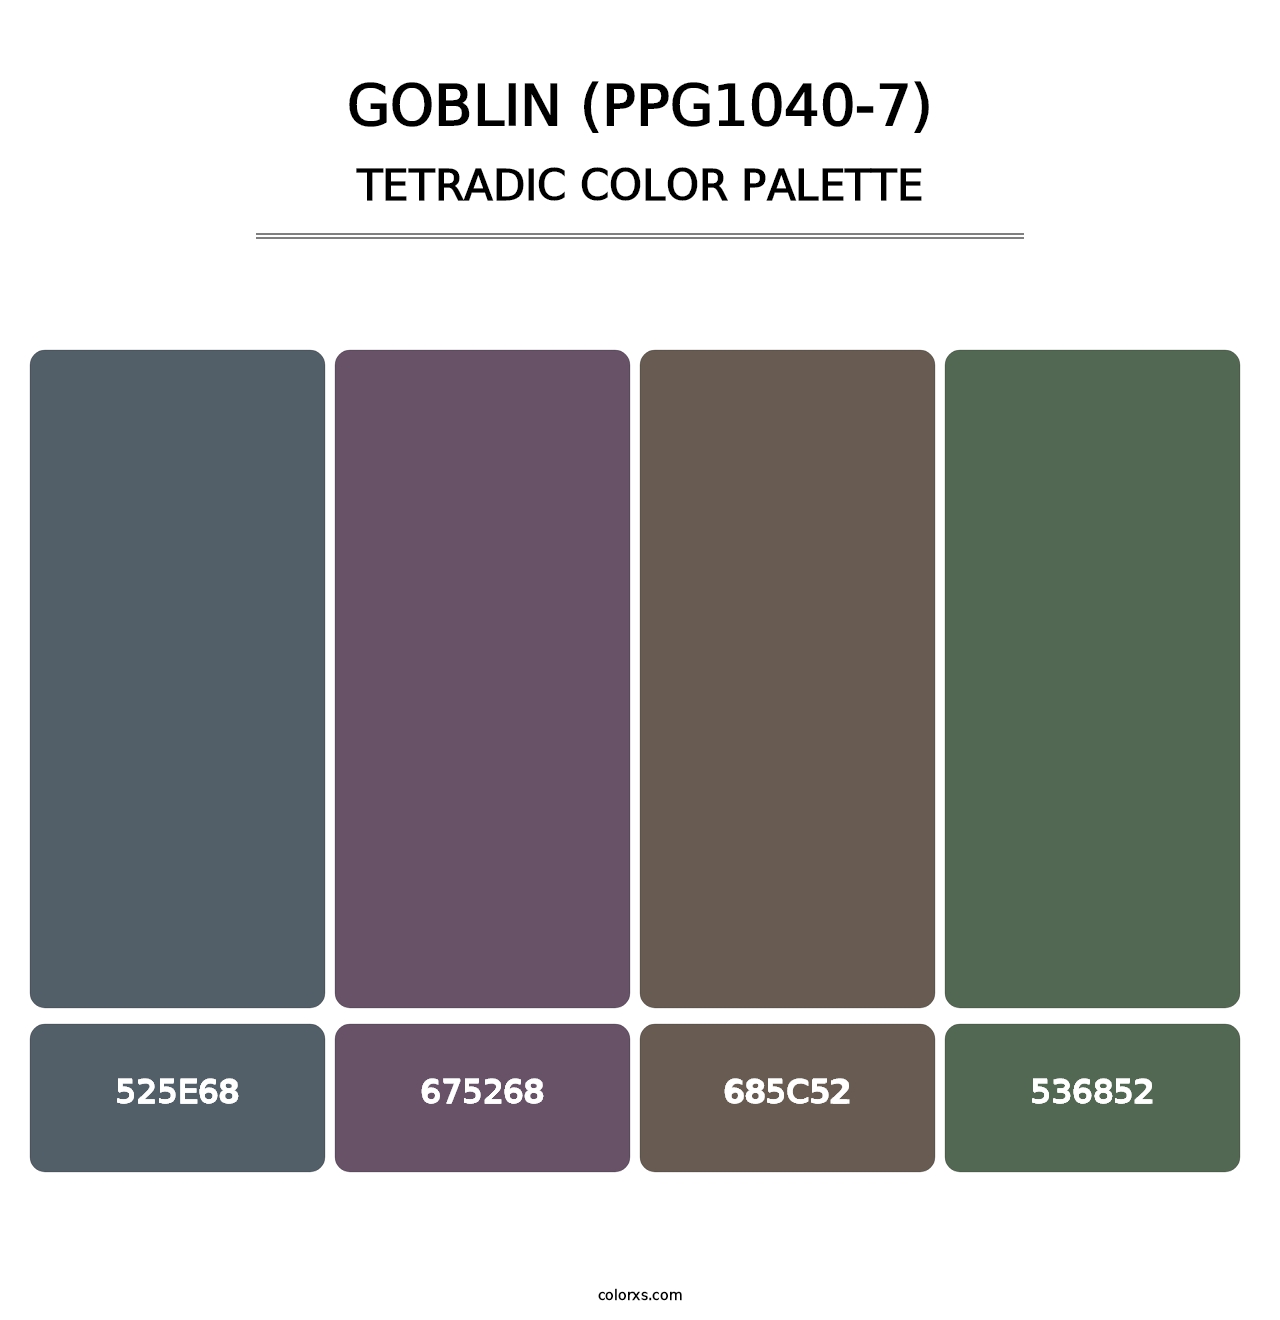 Goblin (PPG1040-7) - Tetradic Color Palette